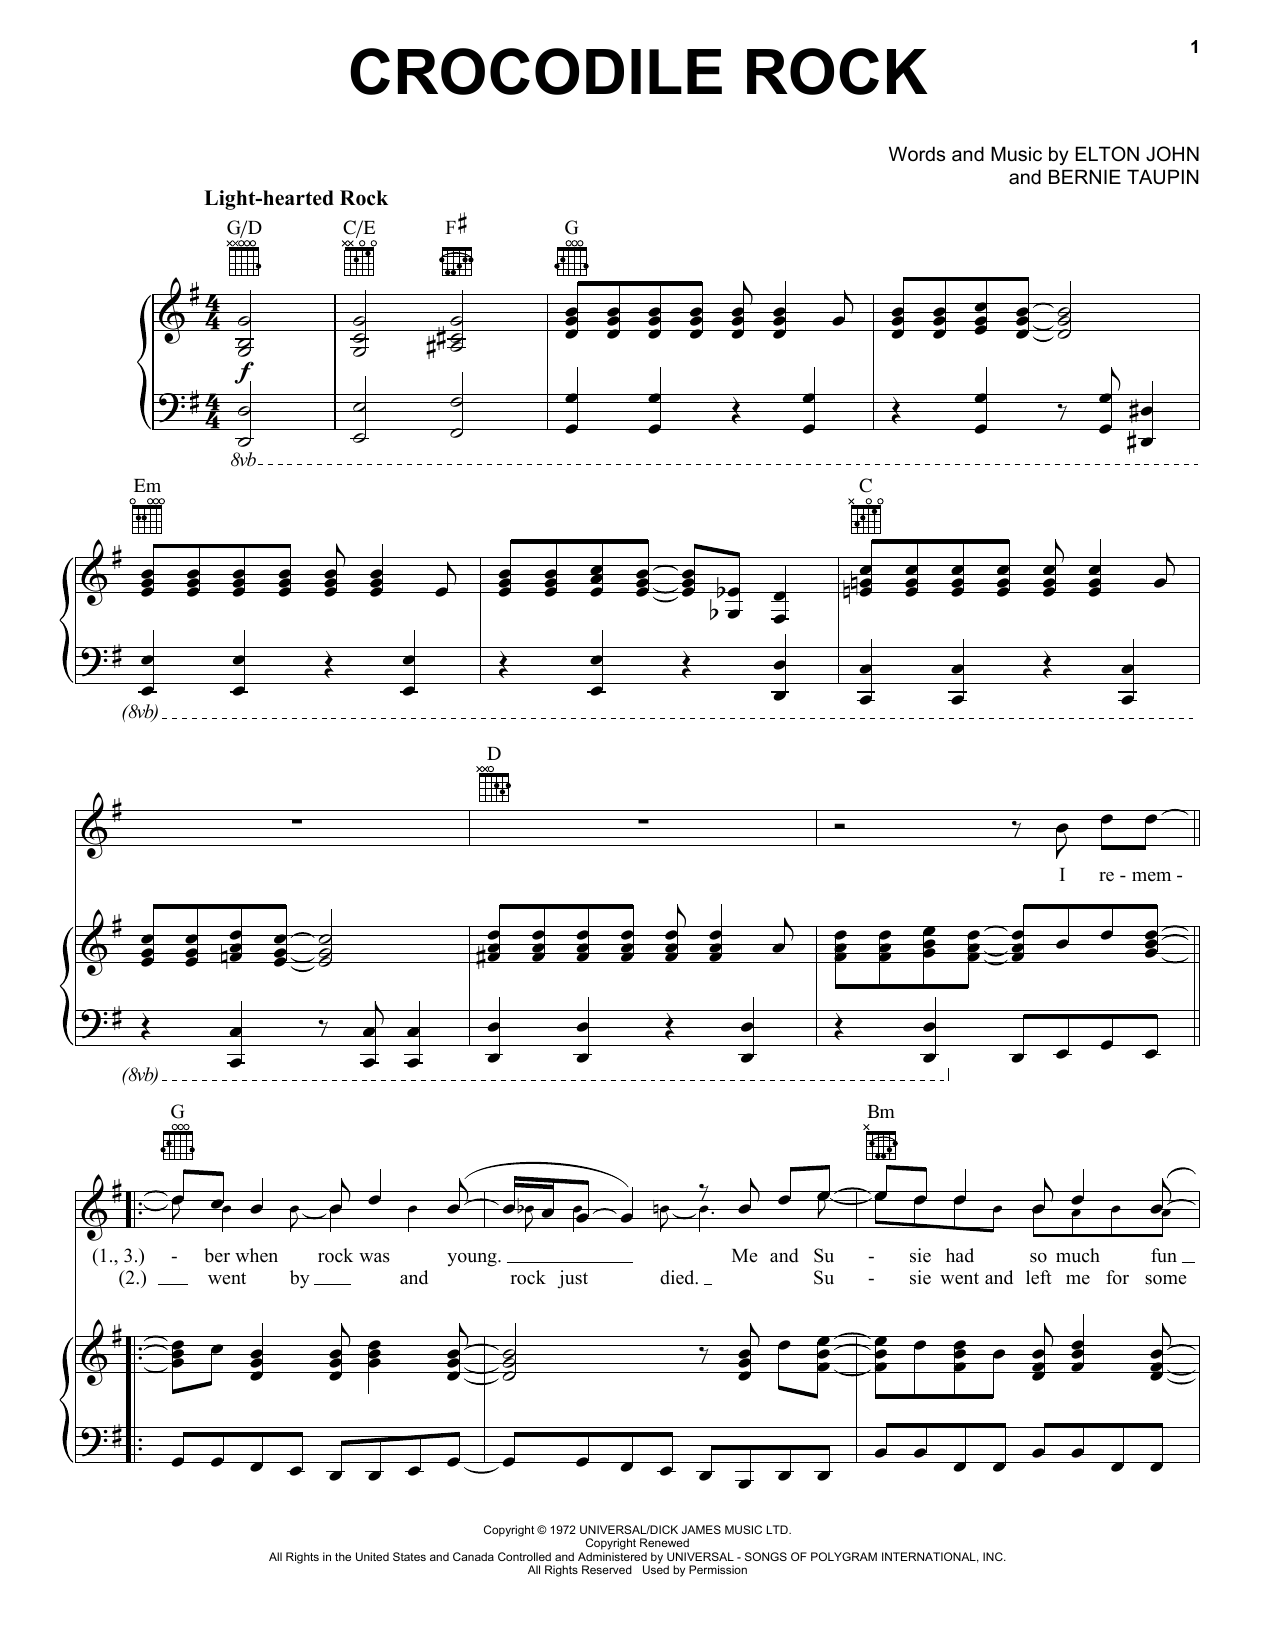 Elton John Crocodile Rock Sheet Music Notes & Chords for Lyrics & Chords - Download or Print PDF